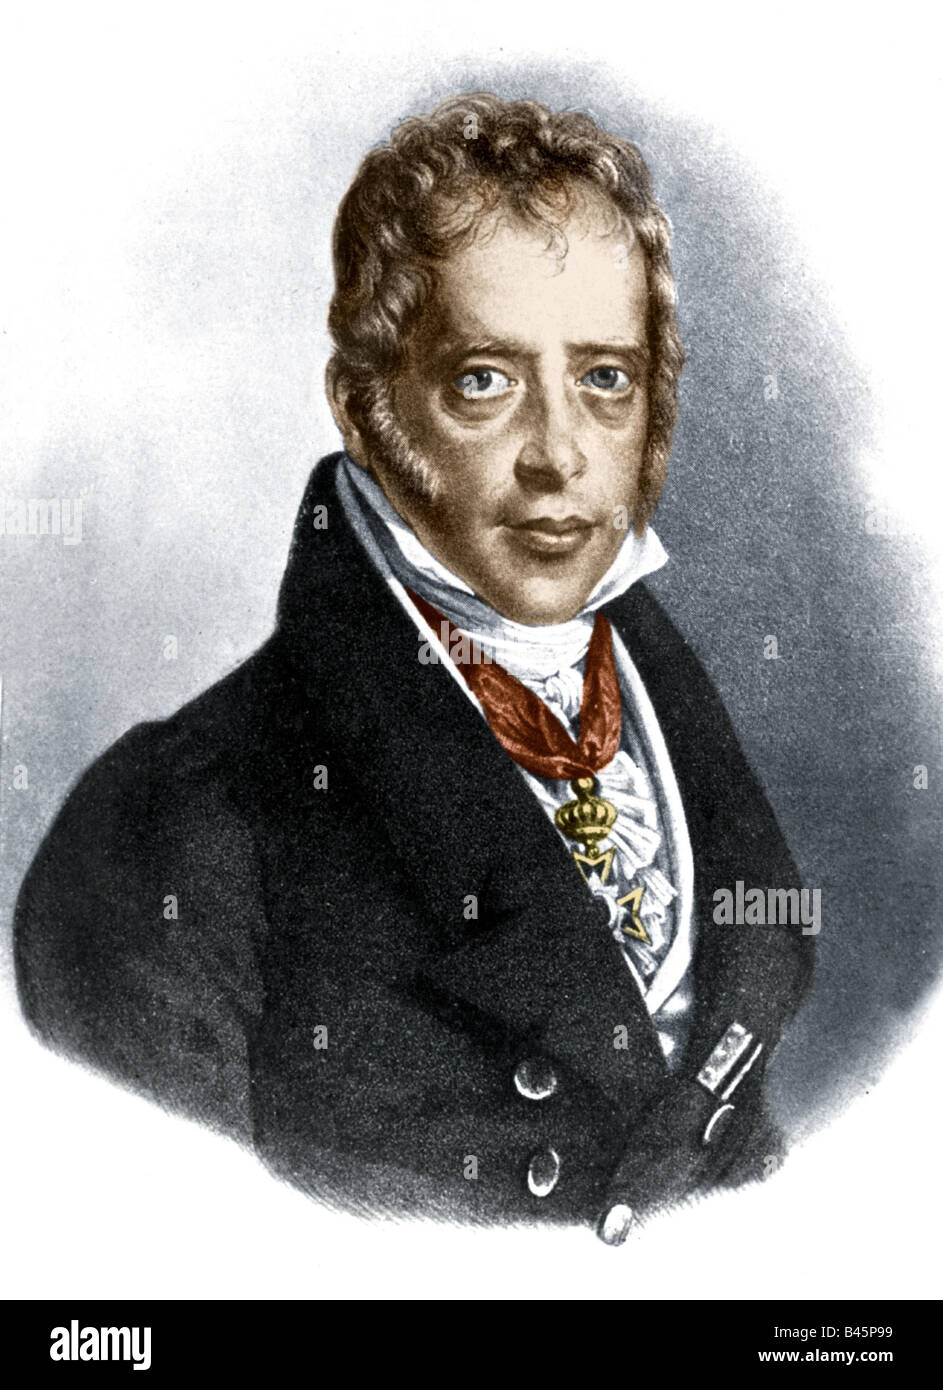 Rothschild, Salomon Mayer baron von, 9.9.1774 - 28.7.1855, German banker, portrait, lithograph, engraving by Lieder, 19th century, , Stock Photo